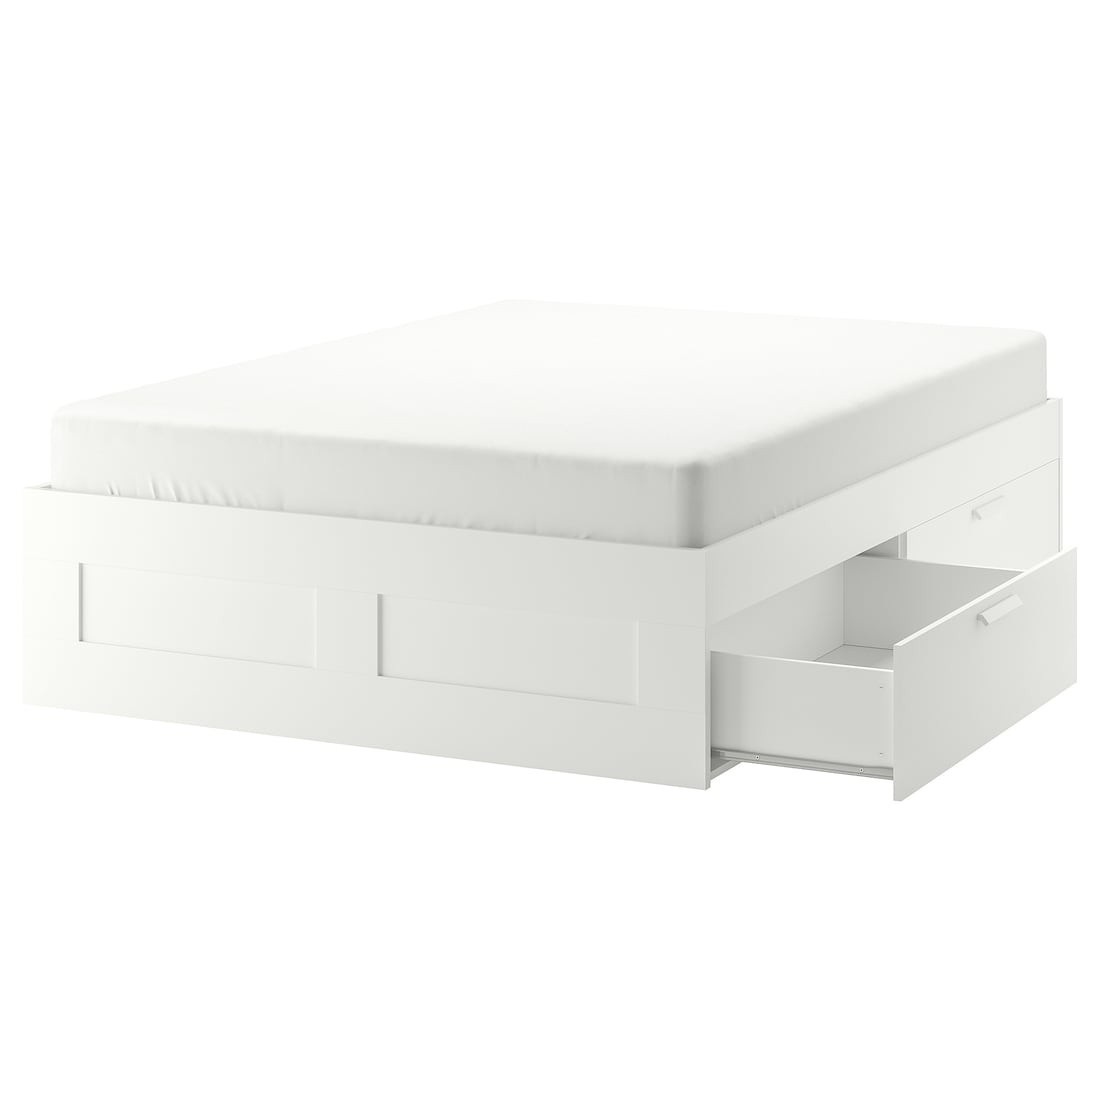 IKEA BRIMNES БРИМНЭС Кровать двуспальная с ящиками, белый / Линдбаден, 140x200 см 89494885 894.948.85